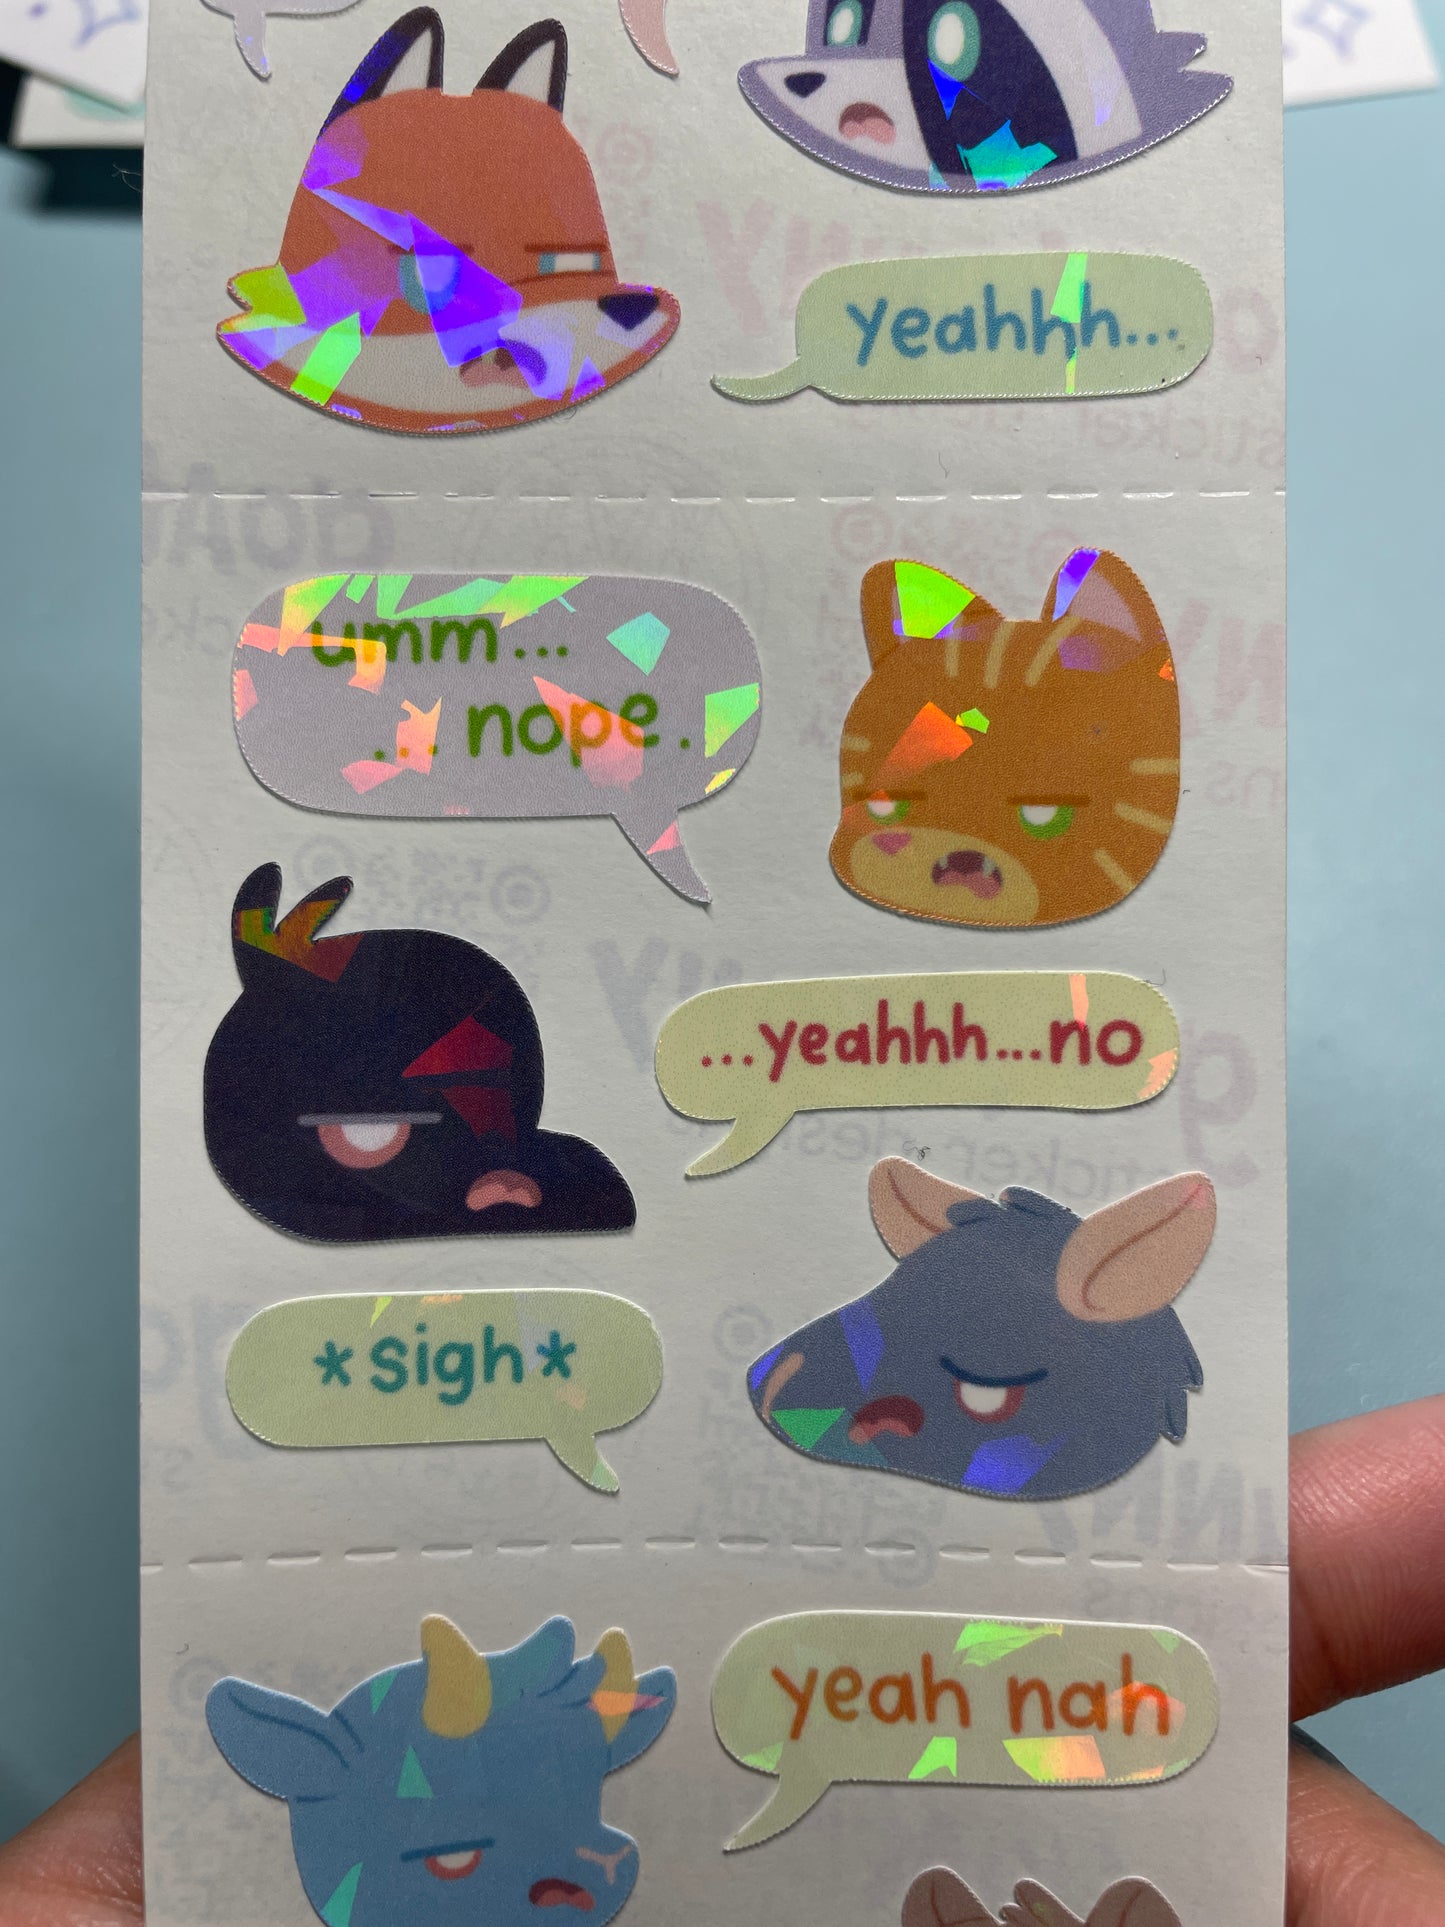 Yeahhhhhnimals sticker sheet